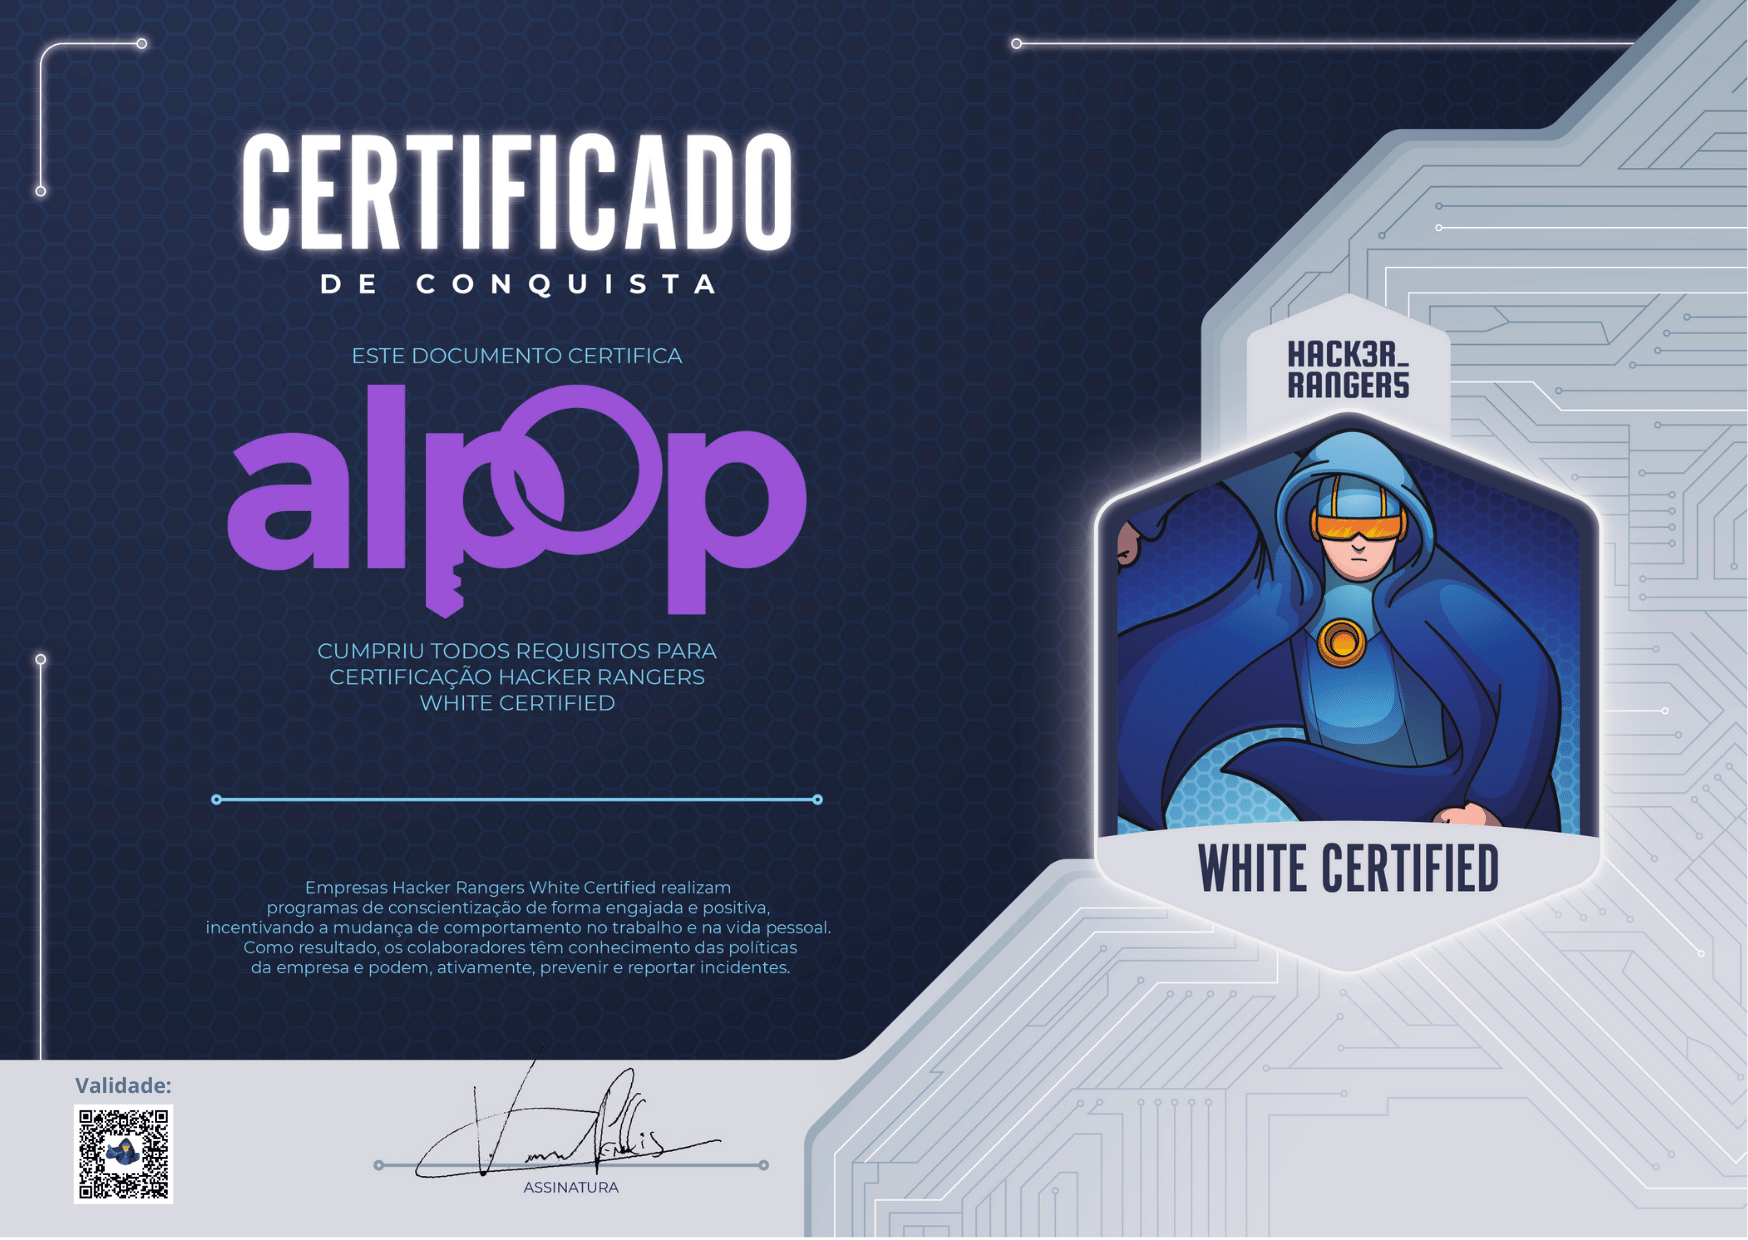 Alpop - Hacker Rangers White Certified